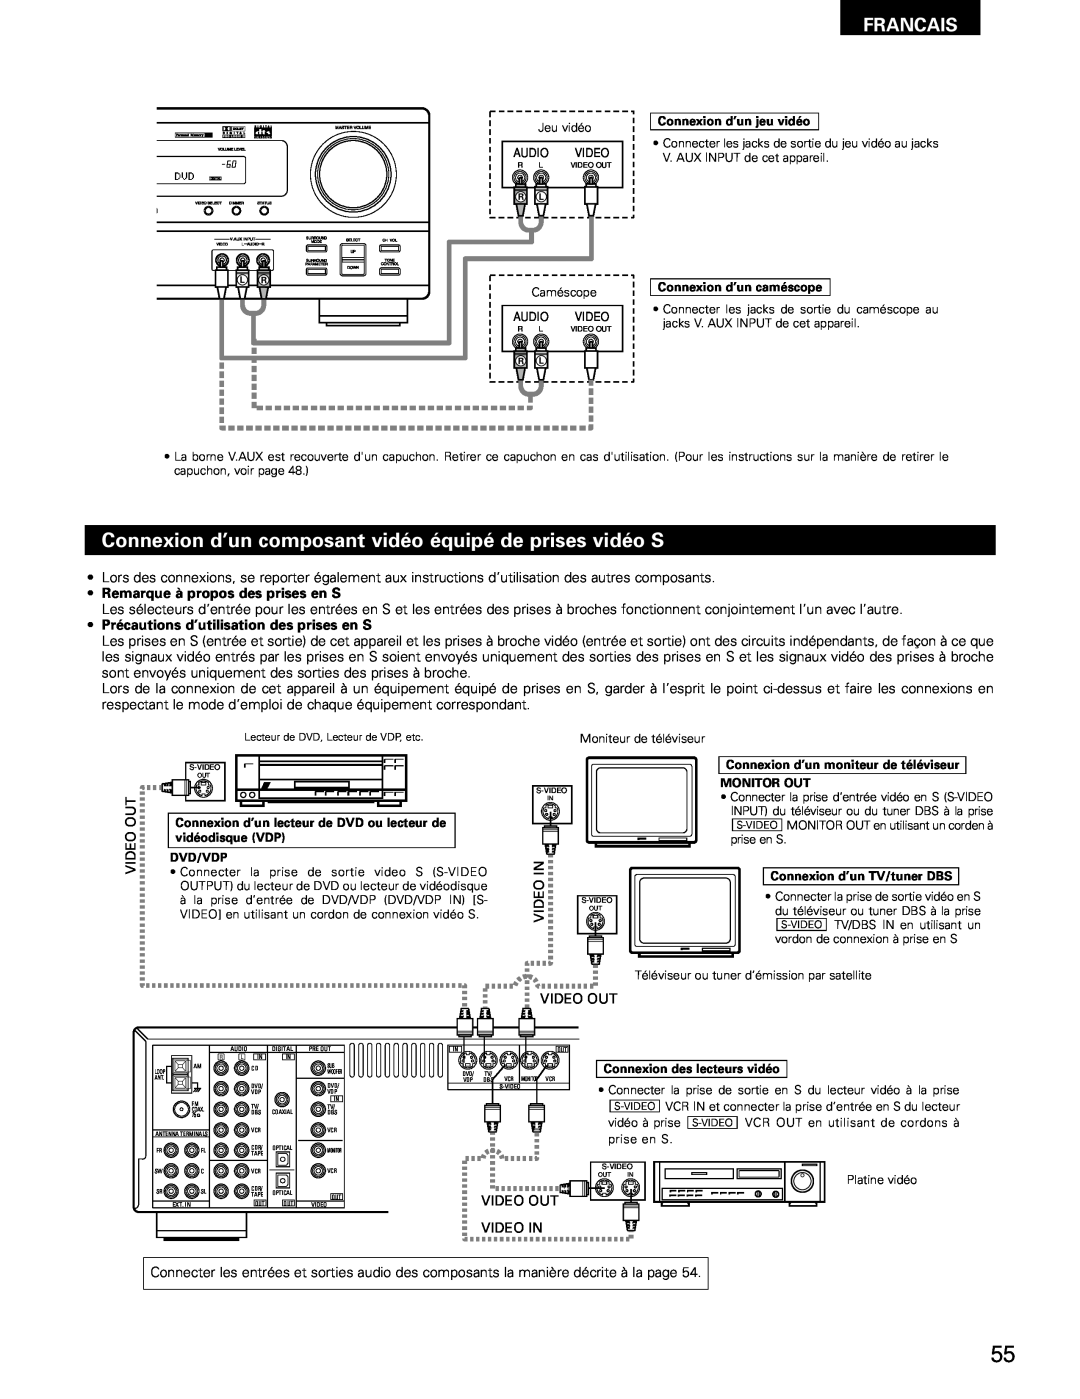 Denon AVR-682, AVR-1602 manual Francais, Remarque à propos des prises en S, Précautions d’utilisation des prises en S 